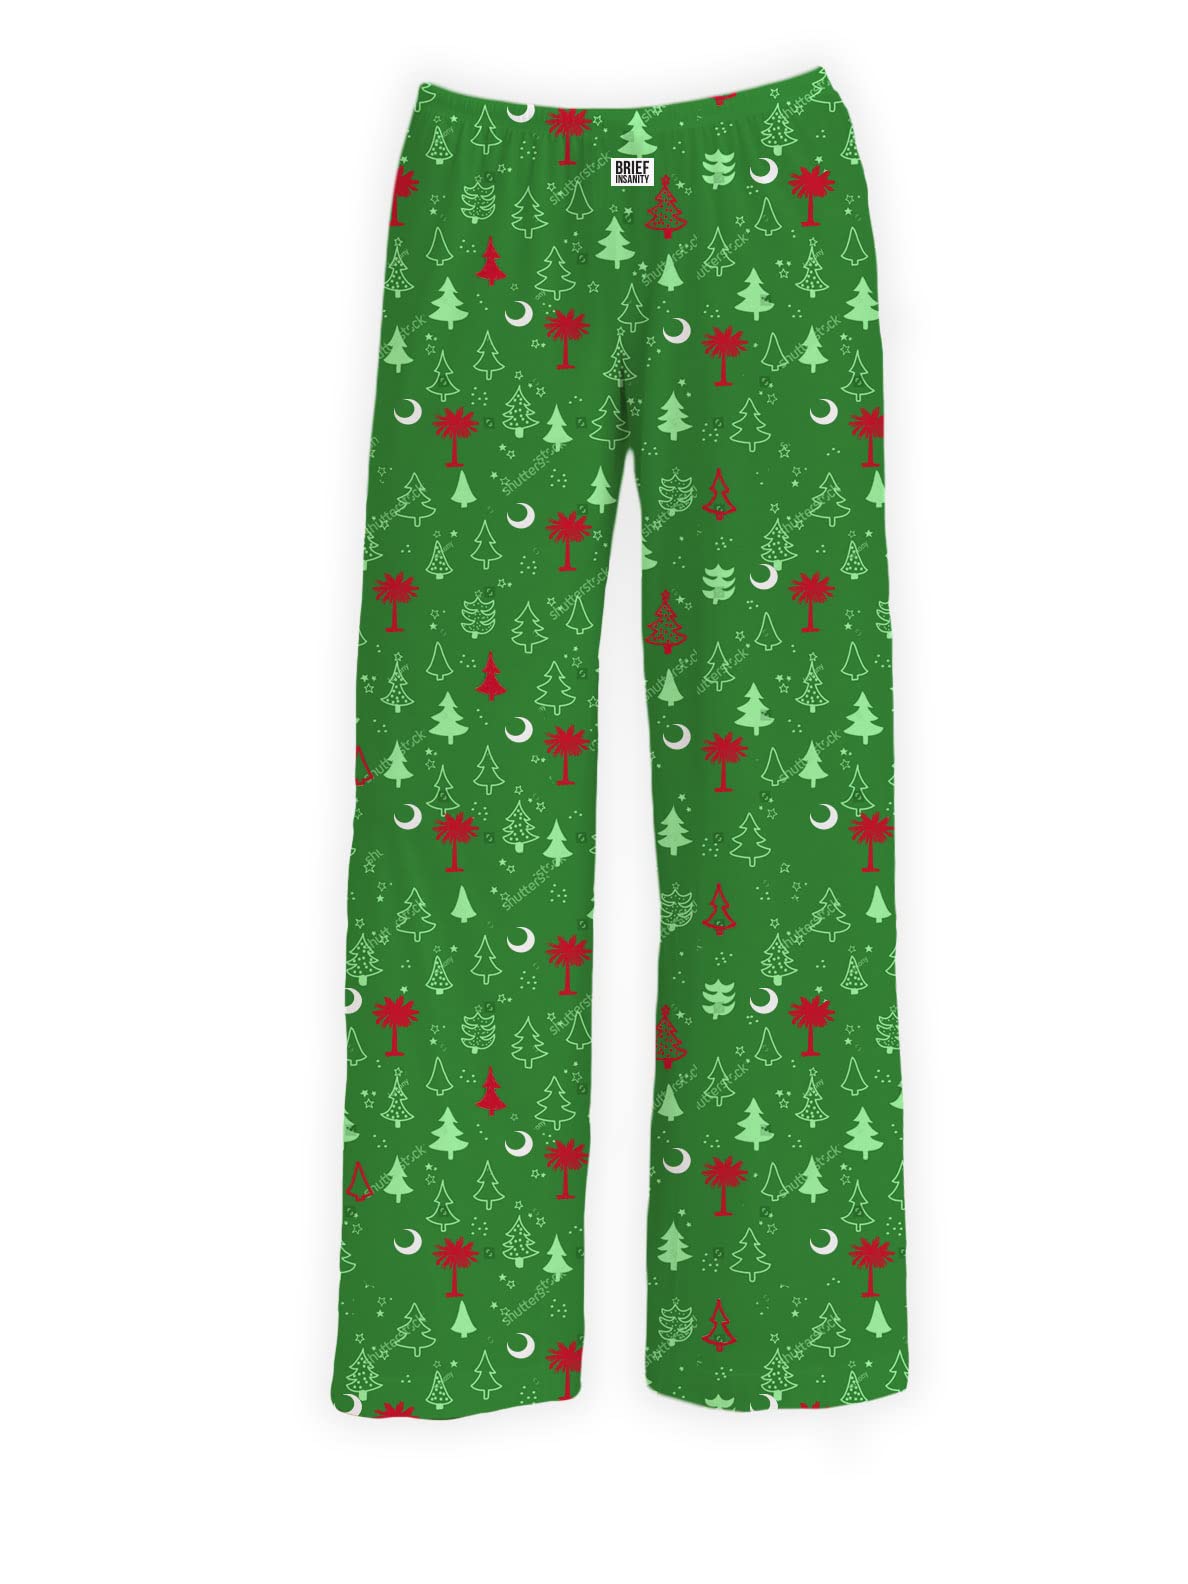 BRIEF INSANITY Christmas Palmetto Tree and Moon Pajama Pants